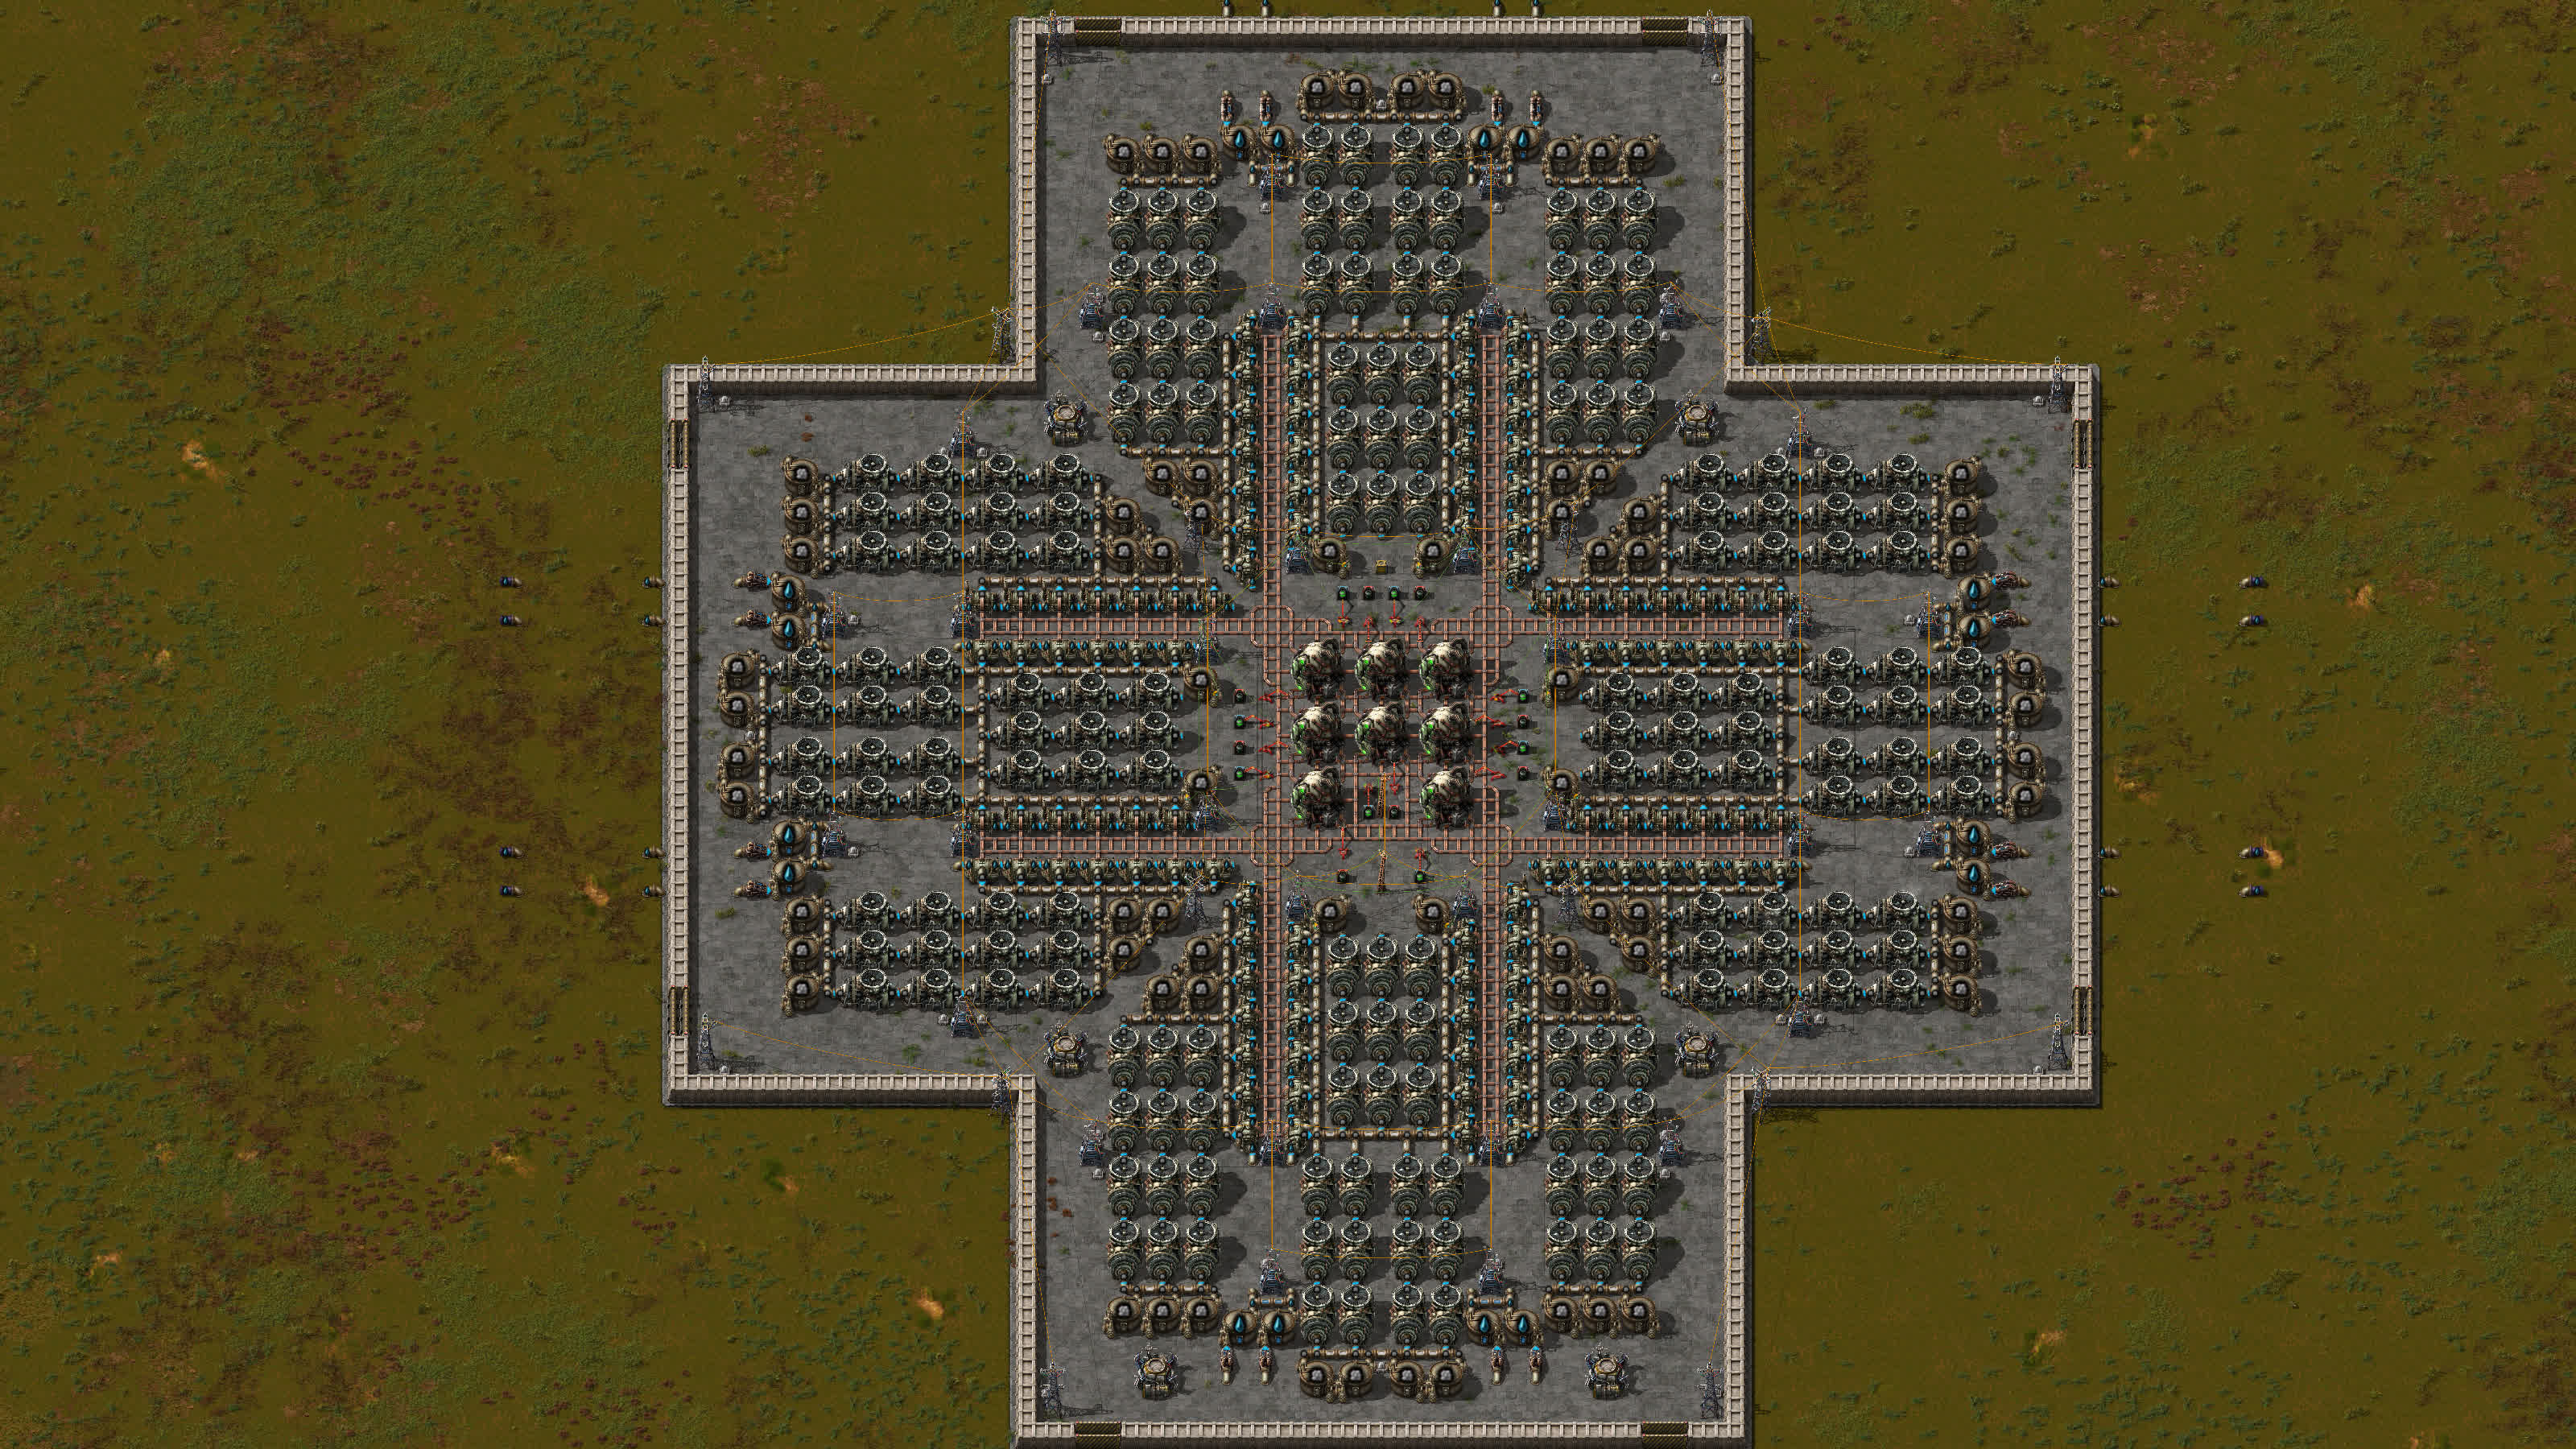 8 Reaktoren in einem 3x3-Gitter